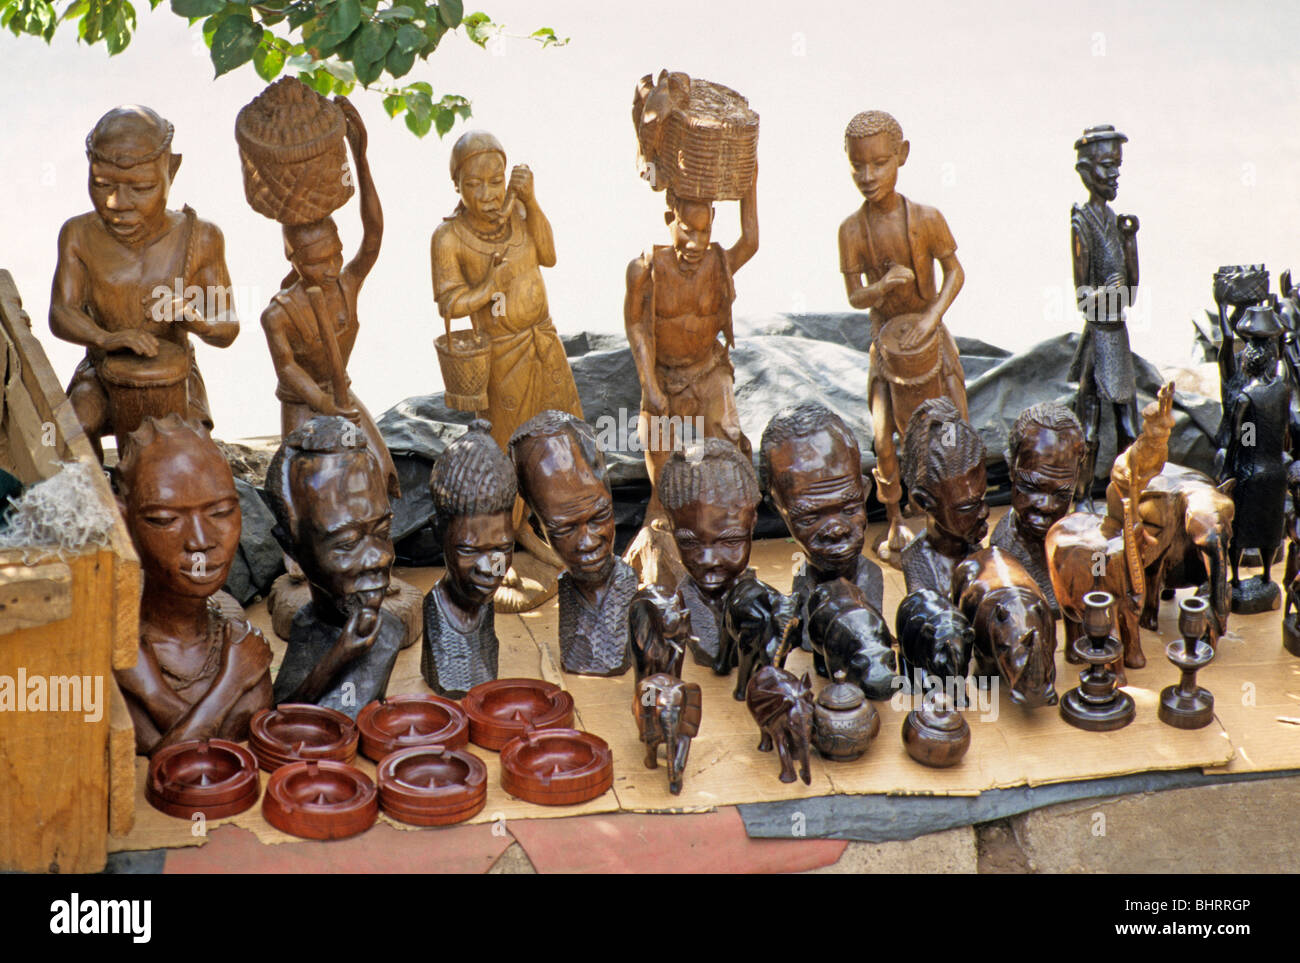 Verkaufsstand verkaufen Holzschnitzereien in Lilongwe Markt, Malawi, Afrika Stockfoto